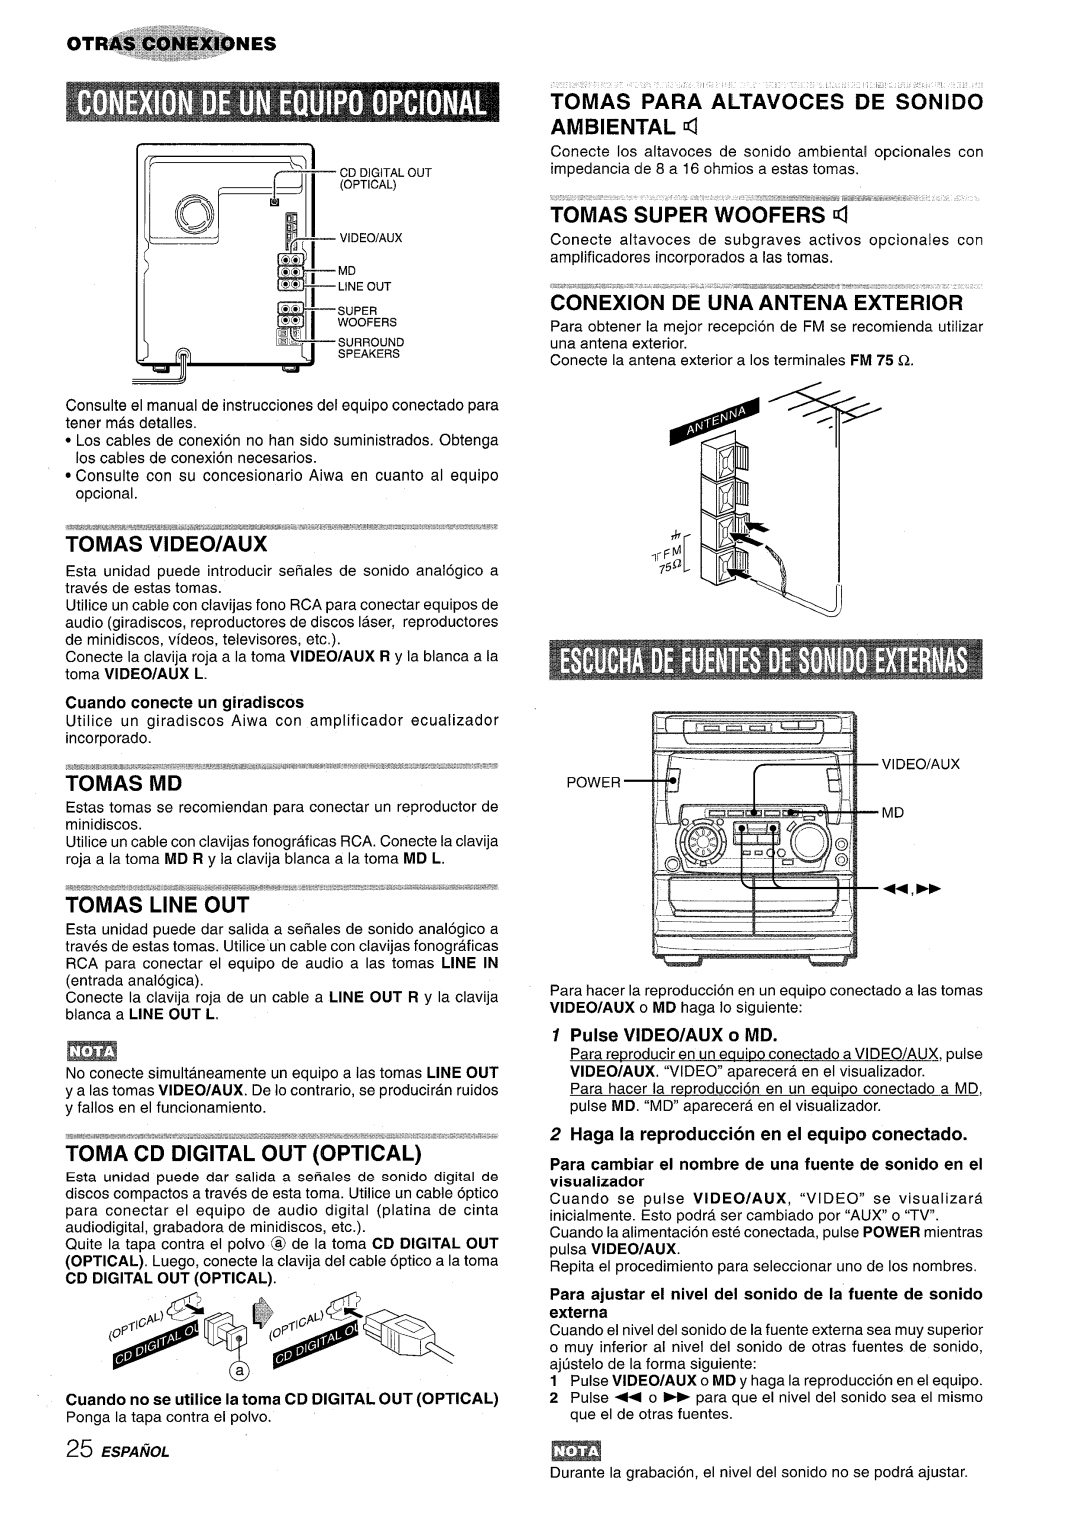 Sony NSX-A707 manual Tomas Para’ Altavoces De Sonido Ambiental, Conexion De Una Antena Exterior, Tomas Video/Aux, Tomas Md 